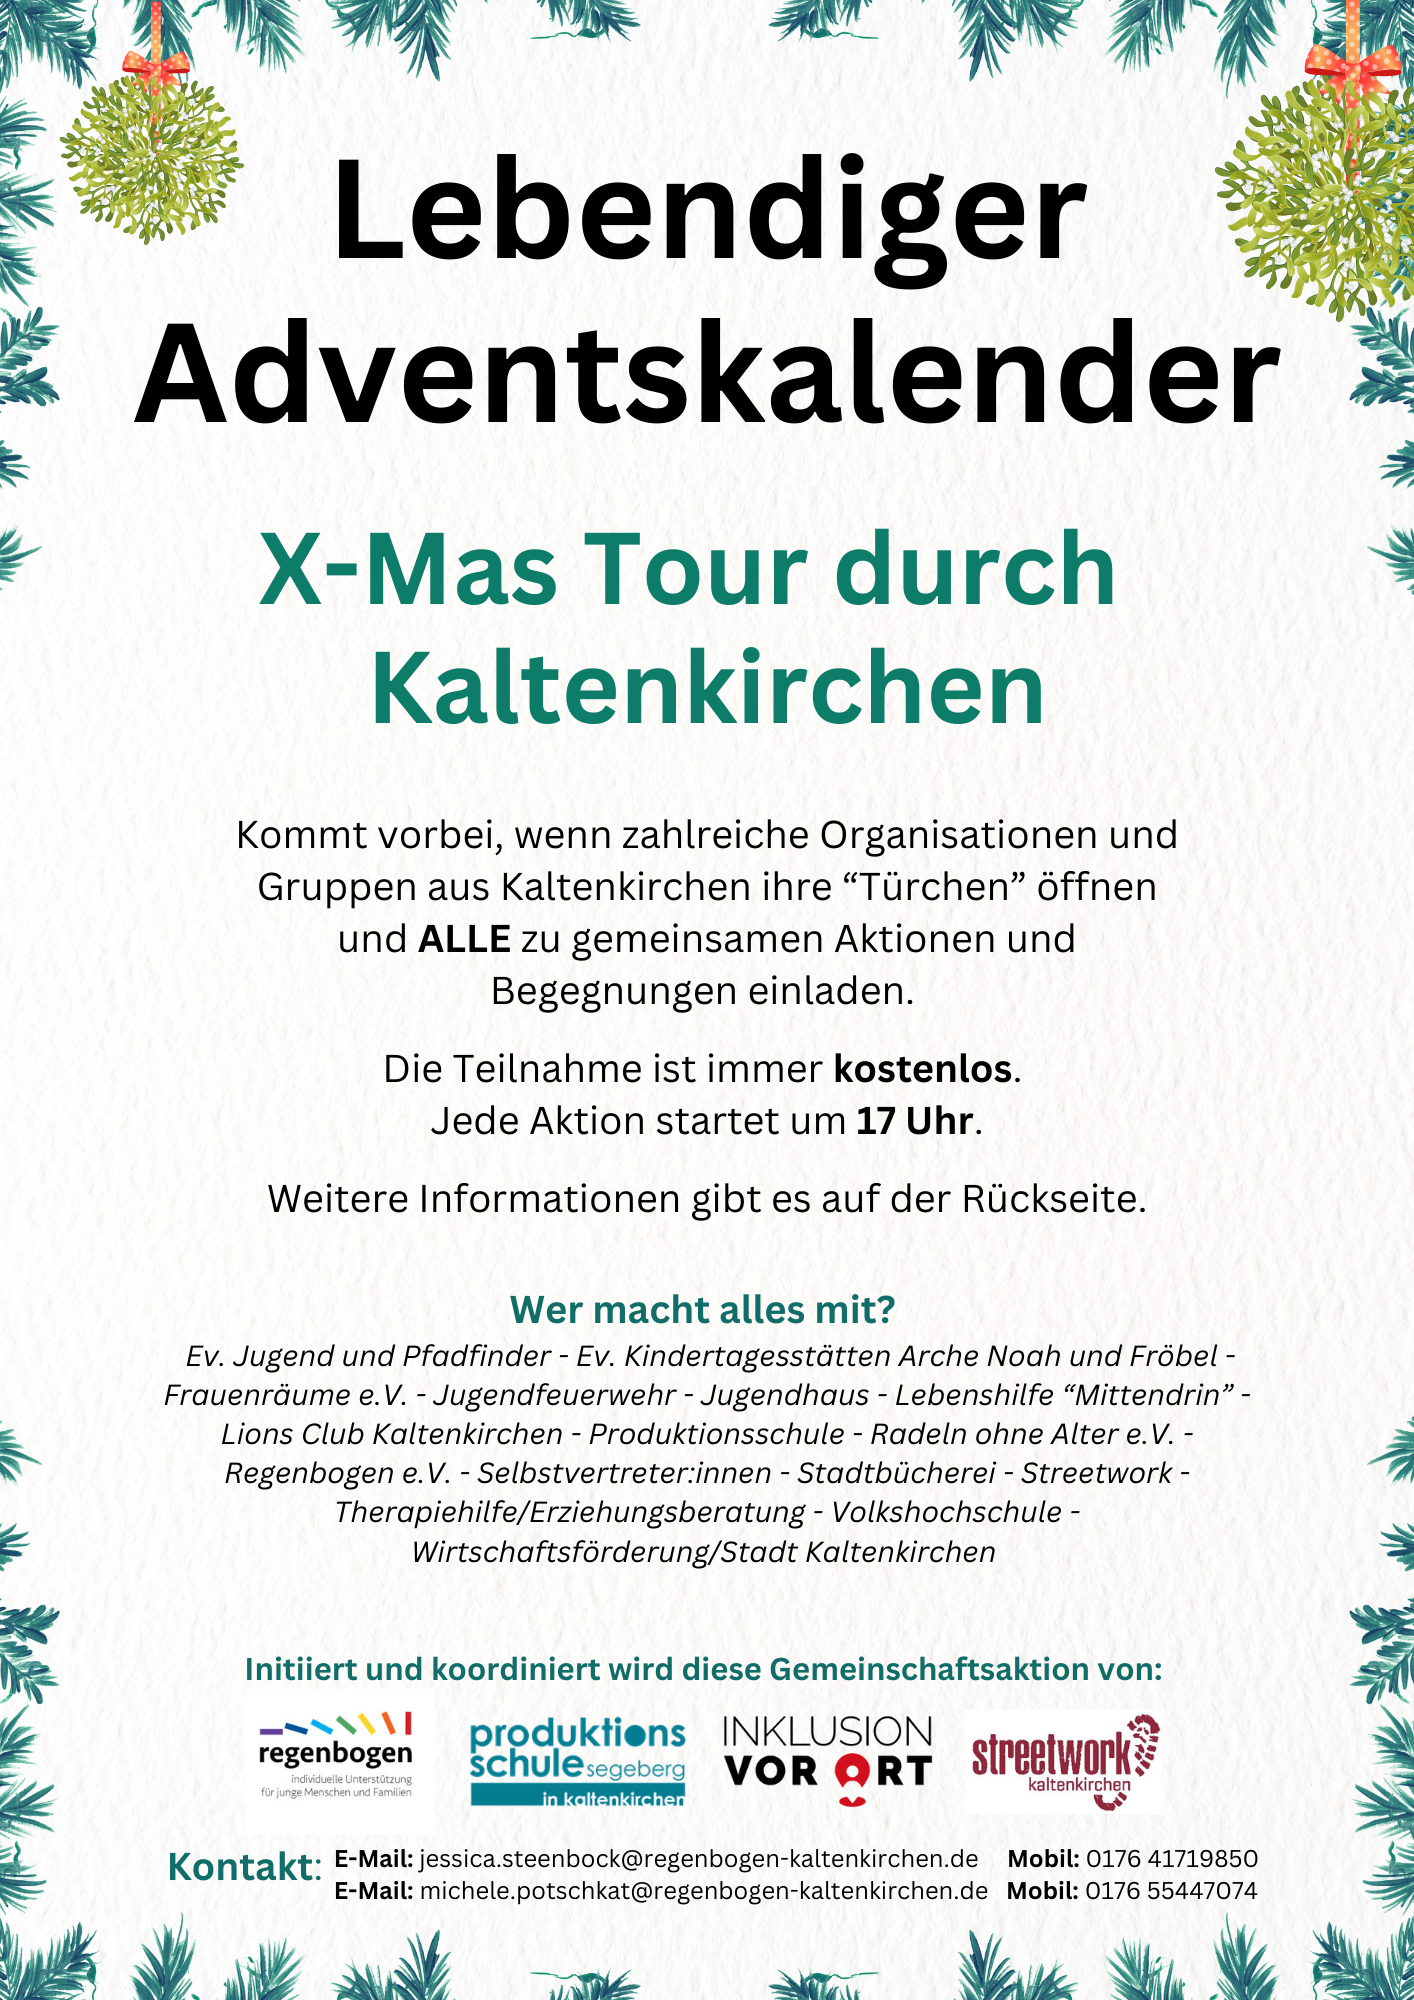 Plakat , wo für den Lebendigen Adventskalender geworben wird. Im weihnachtlichen Design.